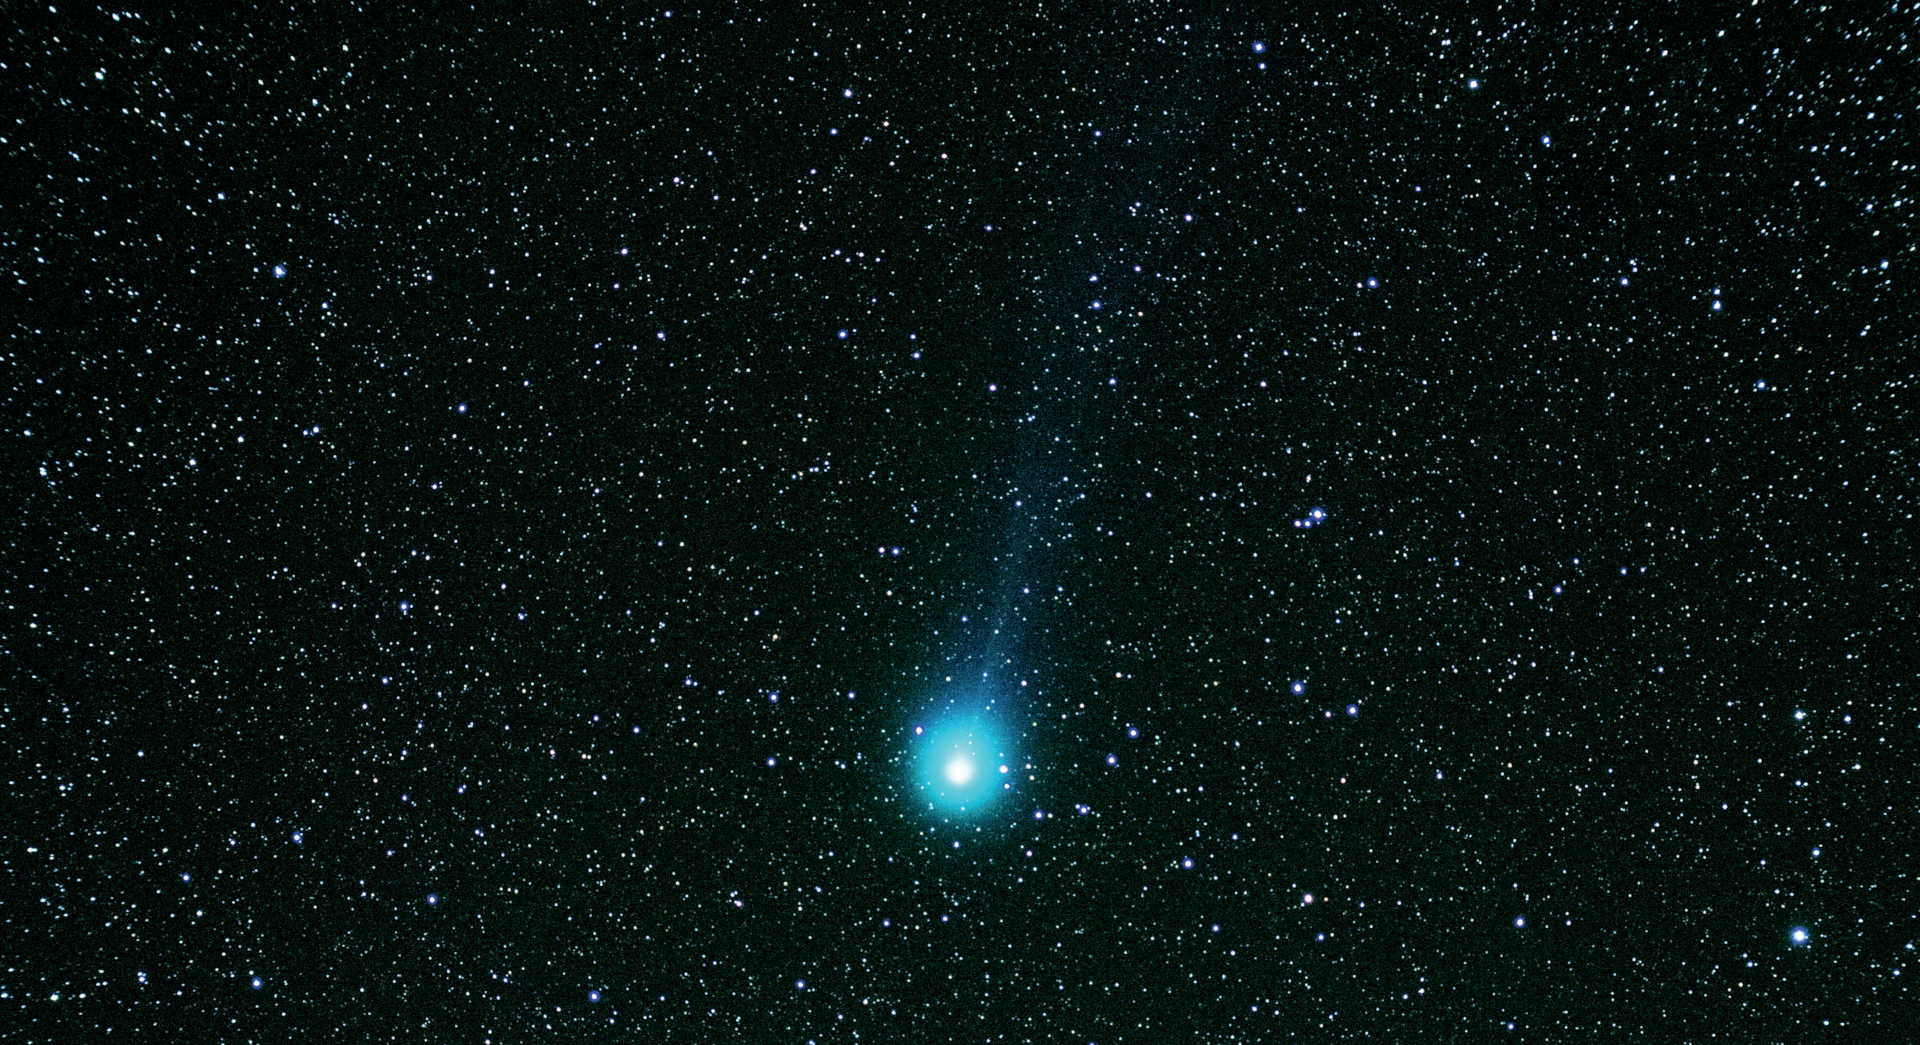 Kometen C/2014 Q2 (Lovejoy) med en refraktor med kort brännvidd. Summabilden togs den 7 mars 2015 med en Canon 550D DSLR på en apo-refraktor med en brännvidd på 355 mm och en öppning på 60 mm. För den summerade bilden togs fem bilder med en exponeringstid på 120 sekunder vardera (total exponeringstid: 10 minuter) och kombinerades med DeepSkyStacker och Photoshop. U. Dittler